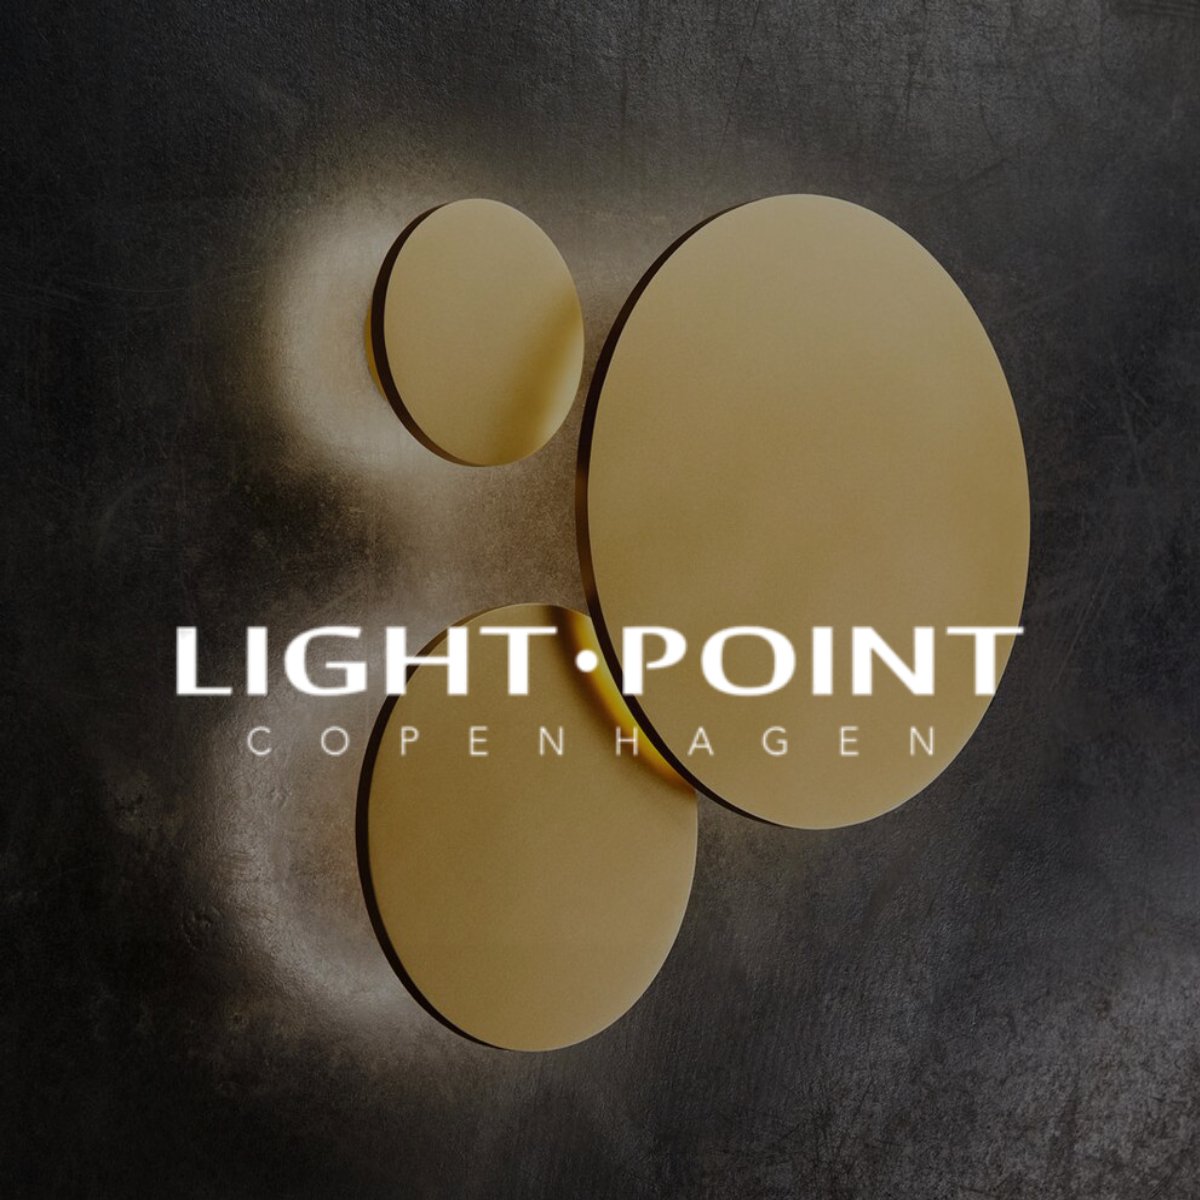 Light-Point - Light-Point lamper til priser her!